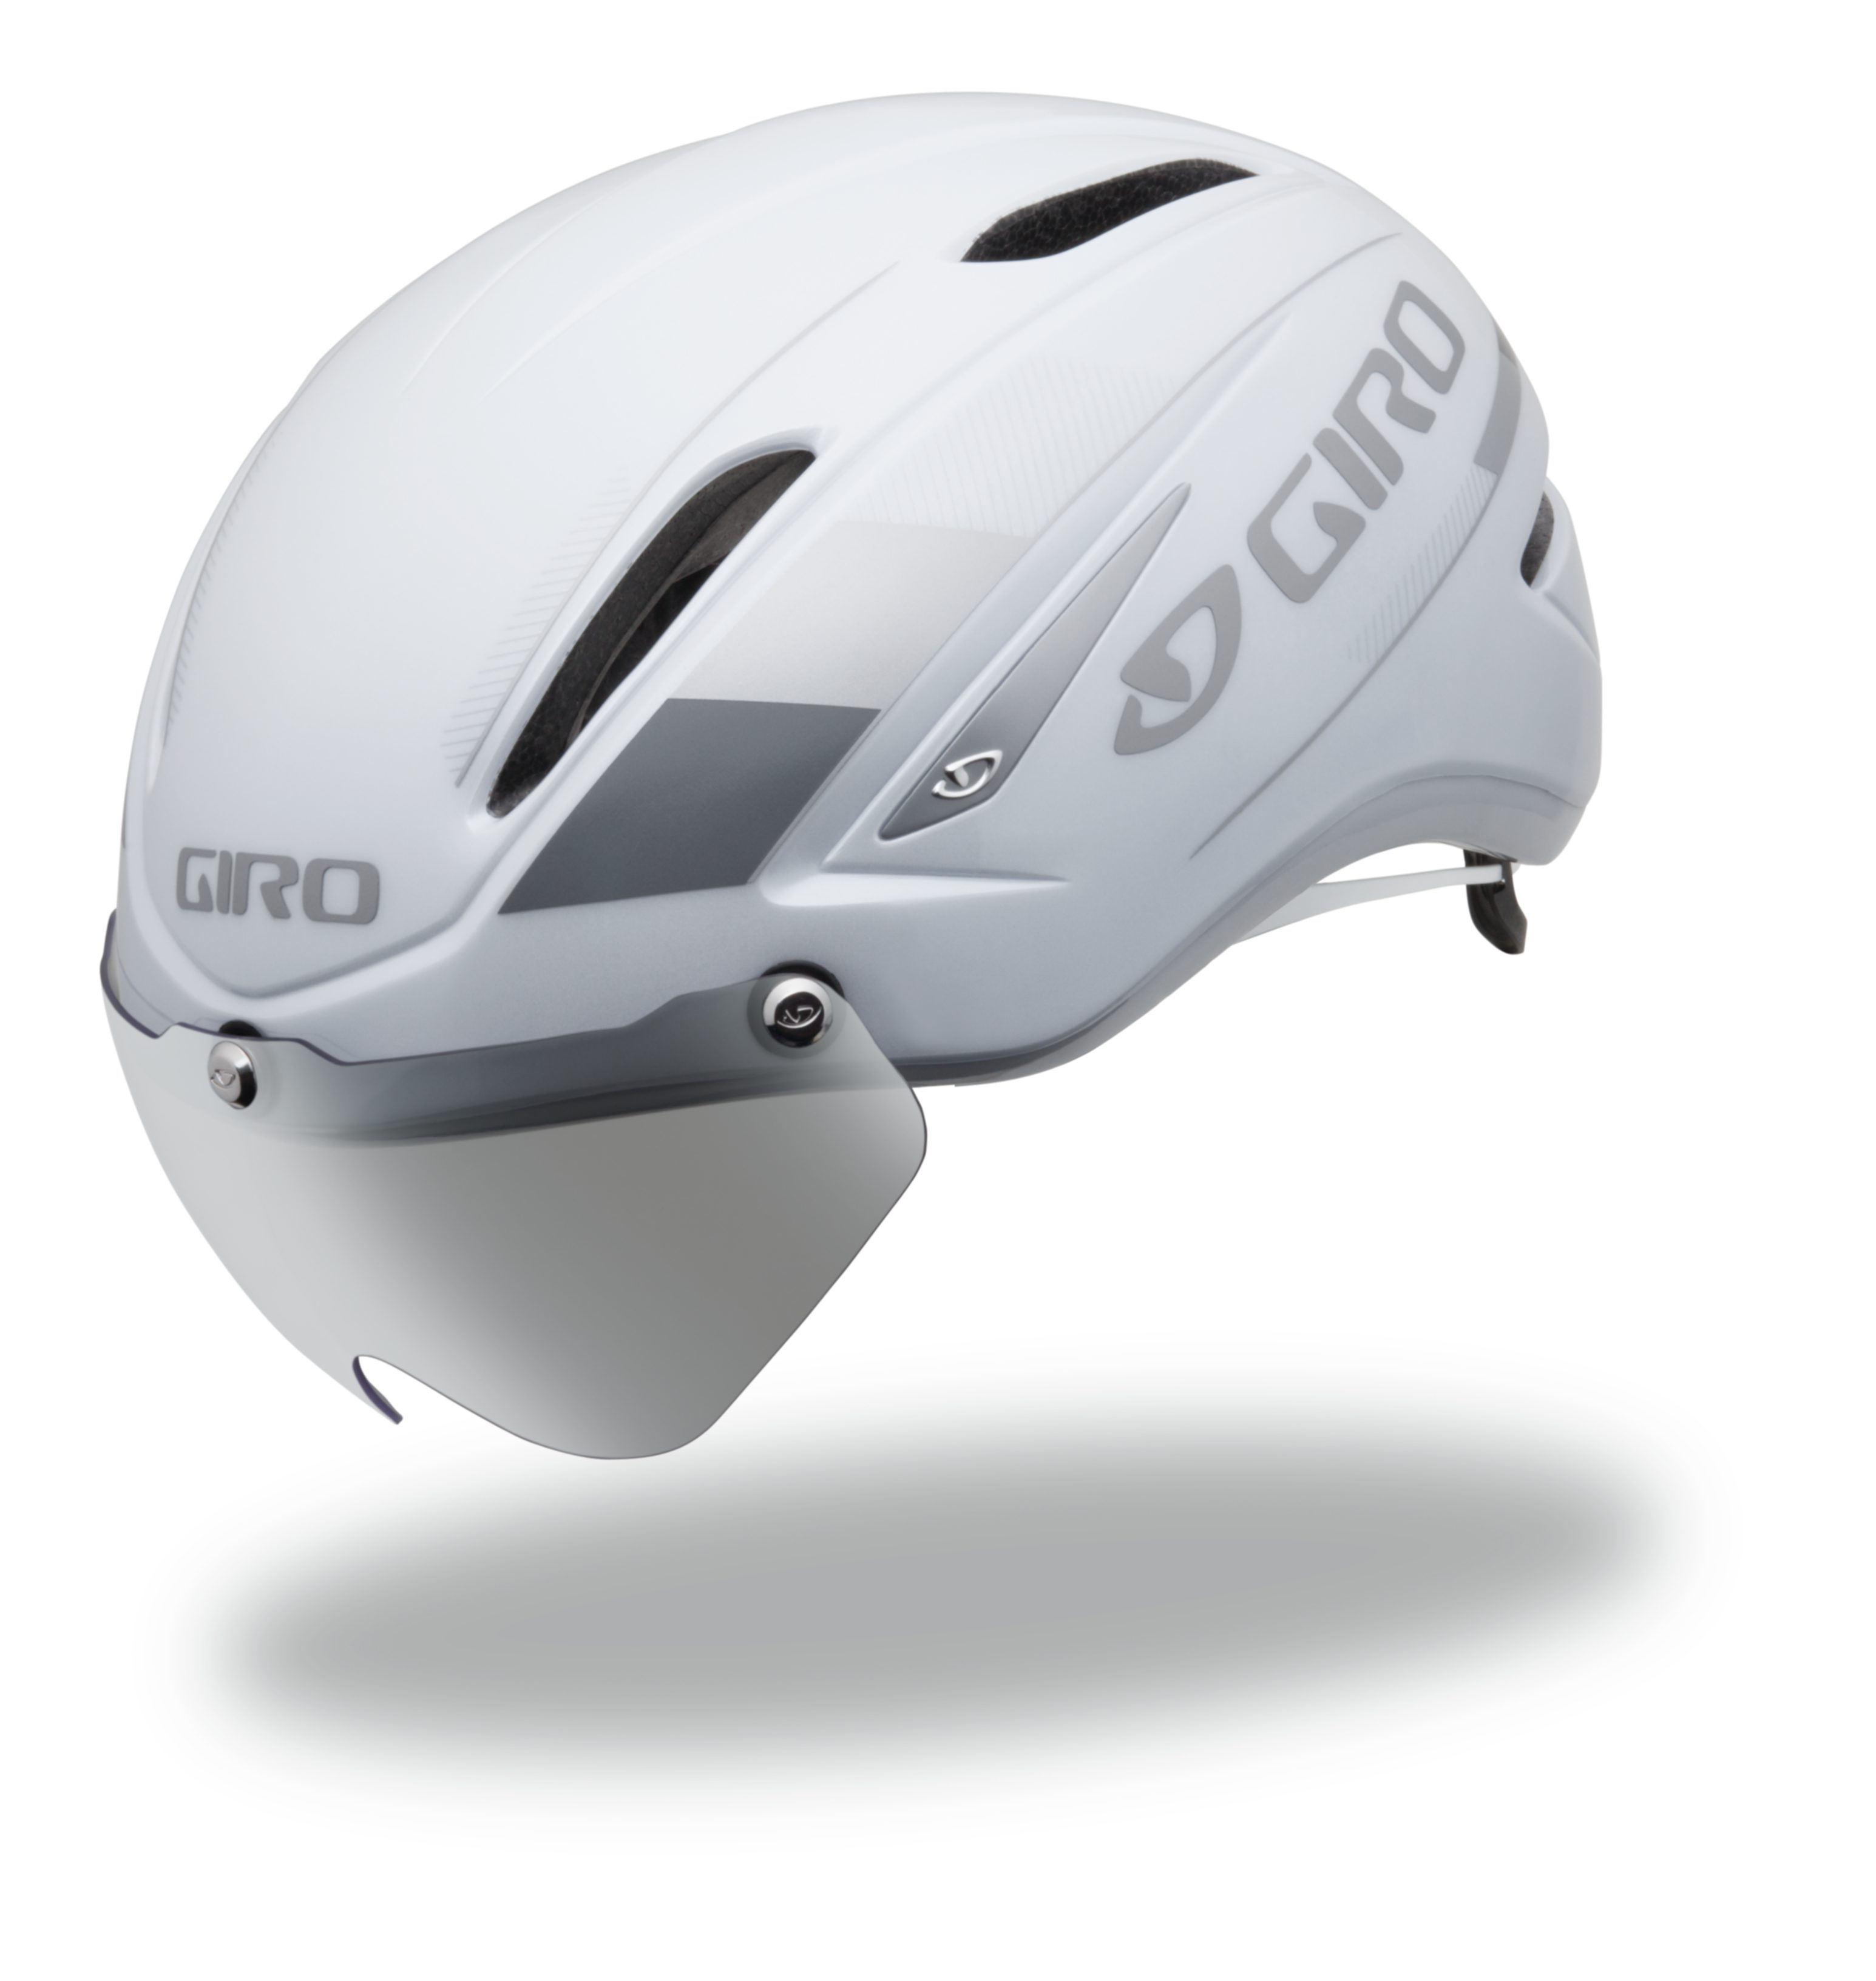 Giro Air Attack: An Aero helmet for all - Triathlon Canada